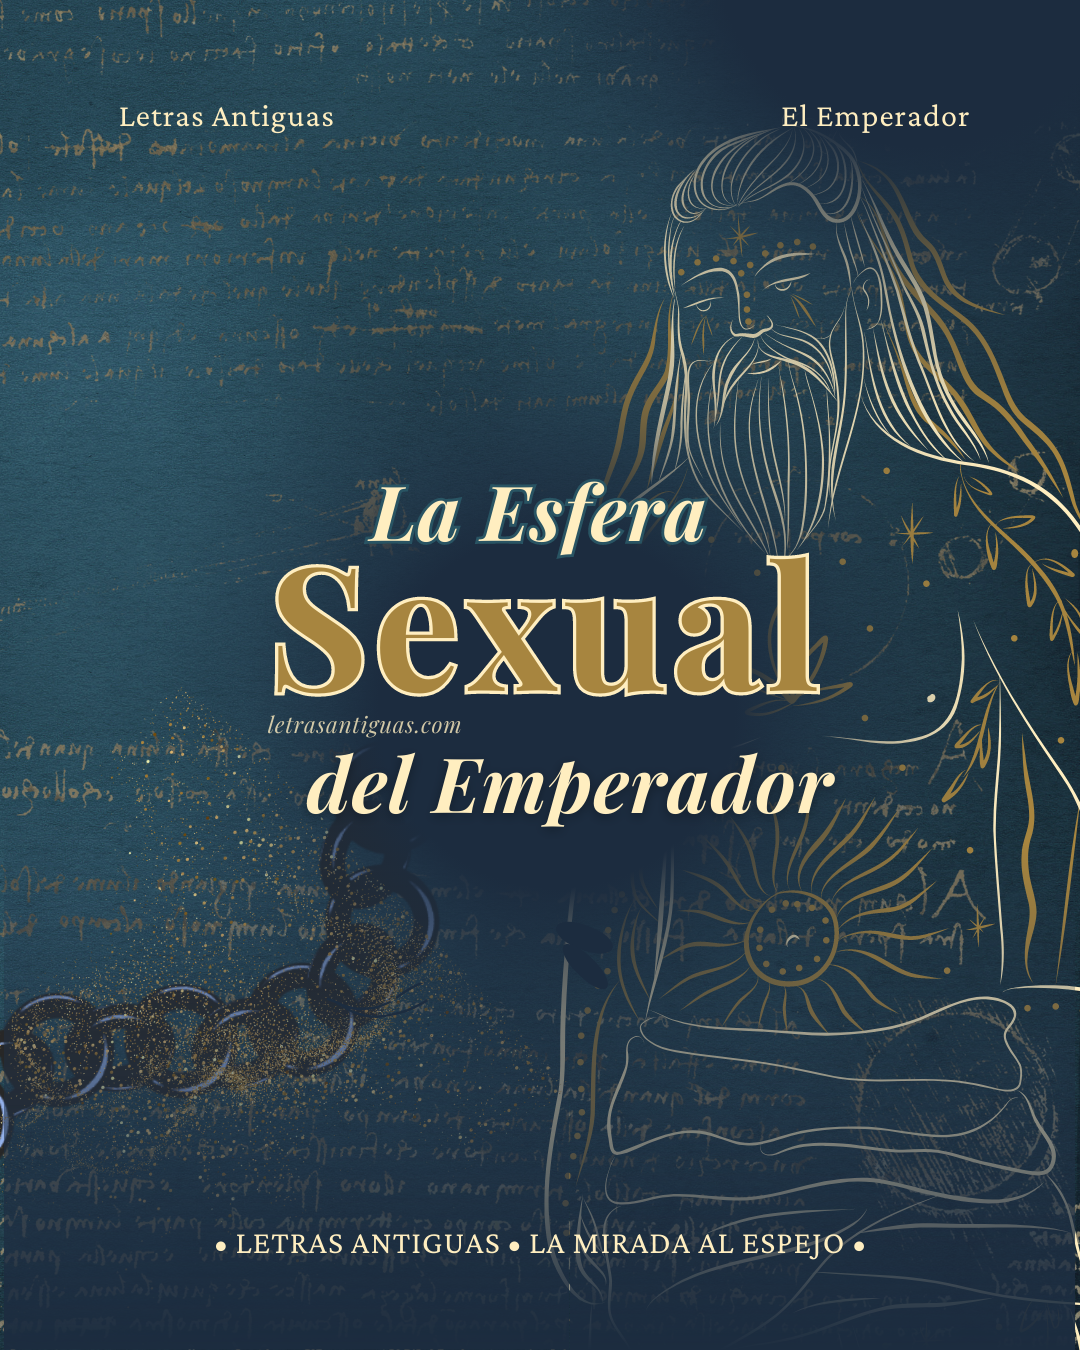 El Emperador en el Tarot y su Sexualidad